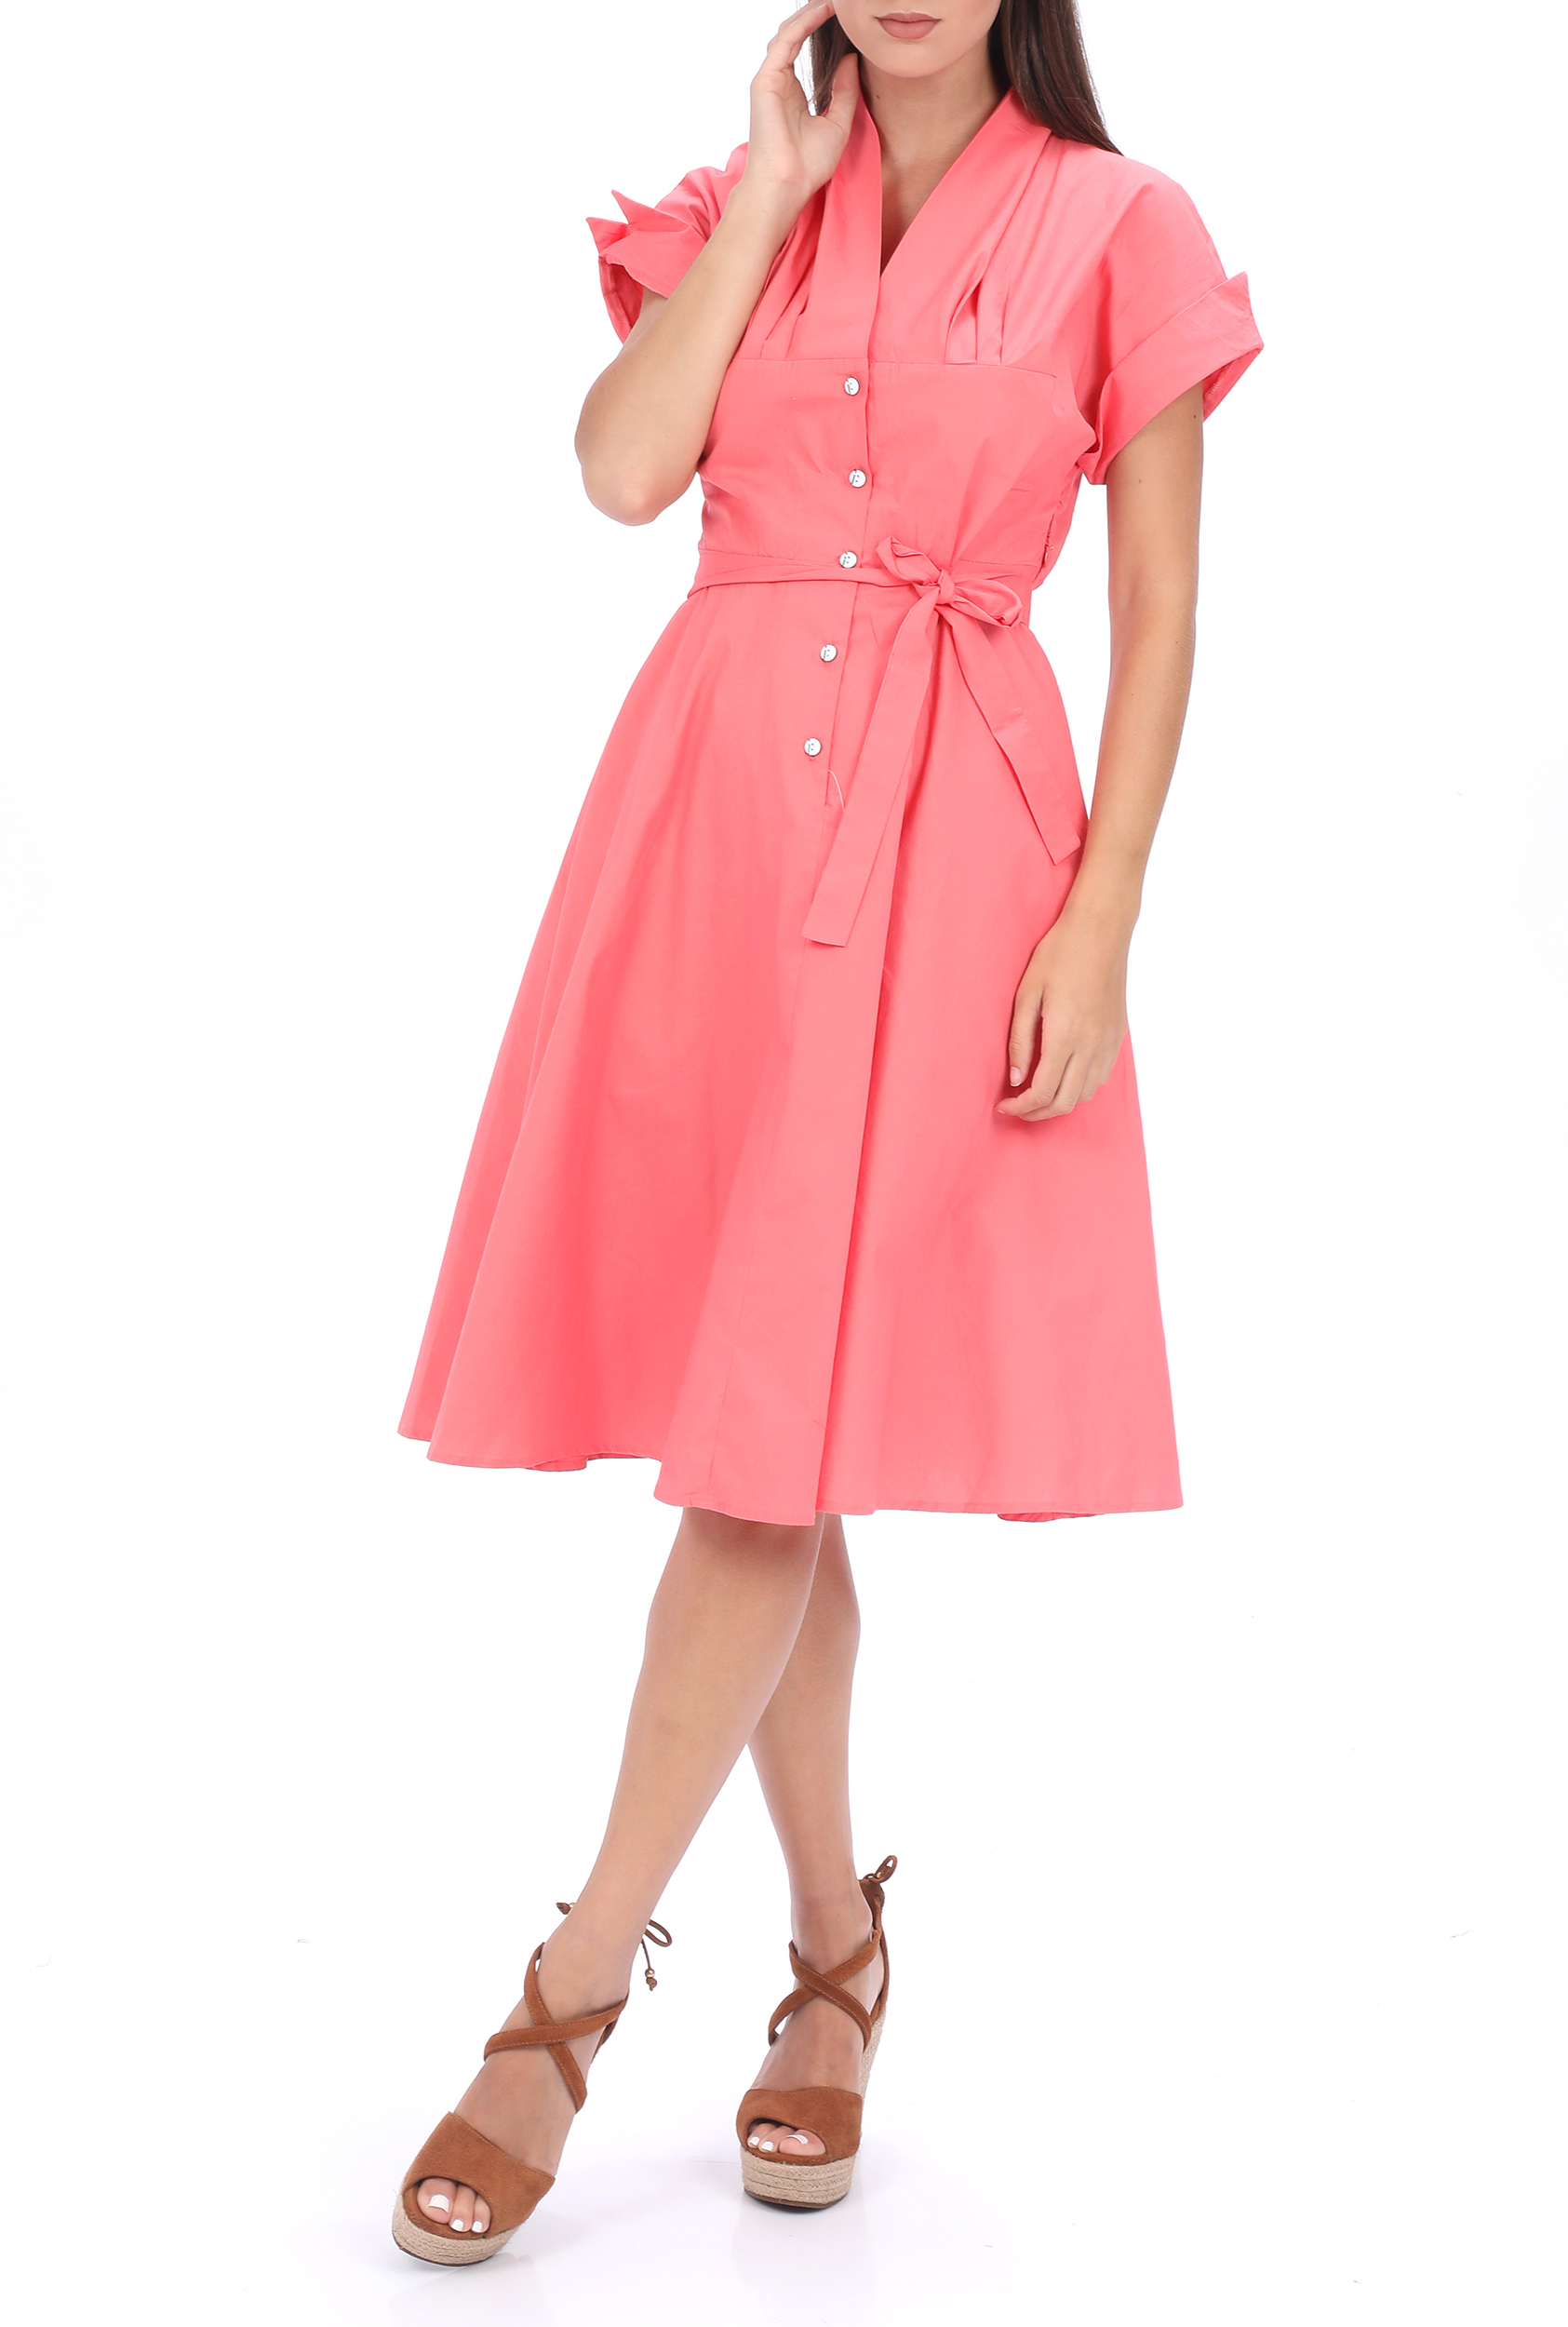 Γυναικεία/Ρούχα/Φόρεματα/Μέχρι το γόνατο MOLLY BRACKEN - Γυναικείο midi φόρεμα MOLLY BRACKEN ροζ